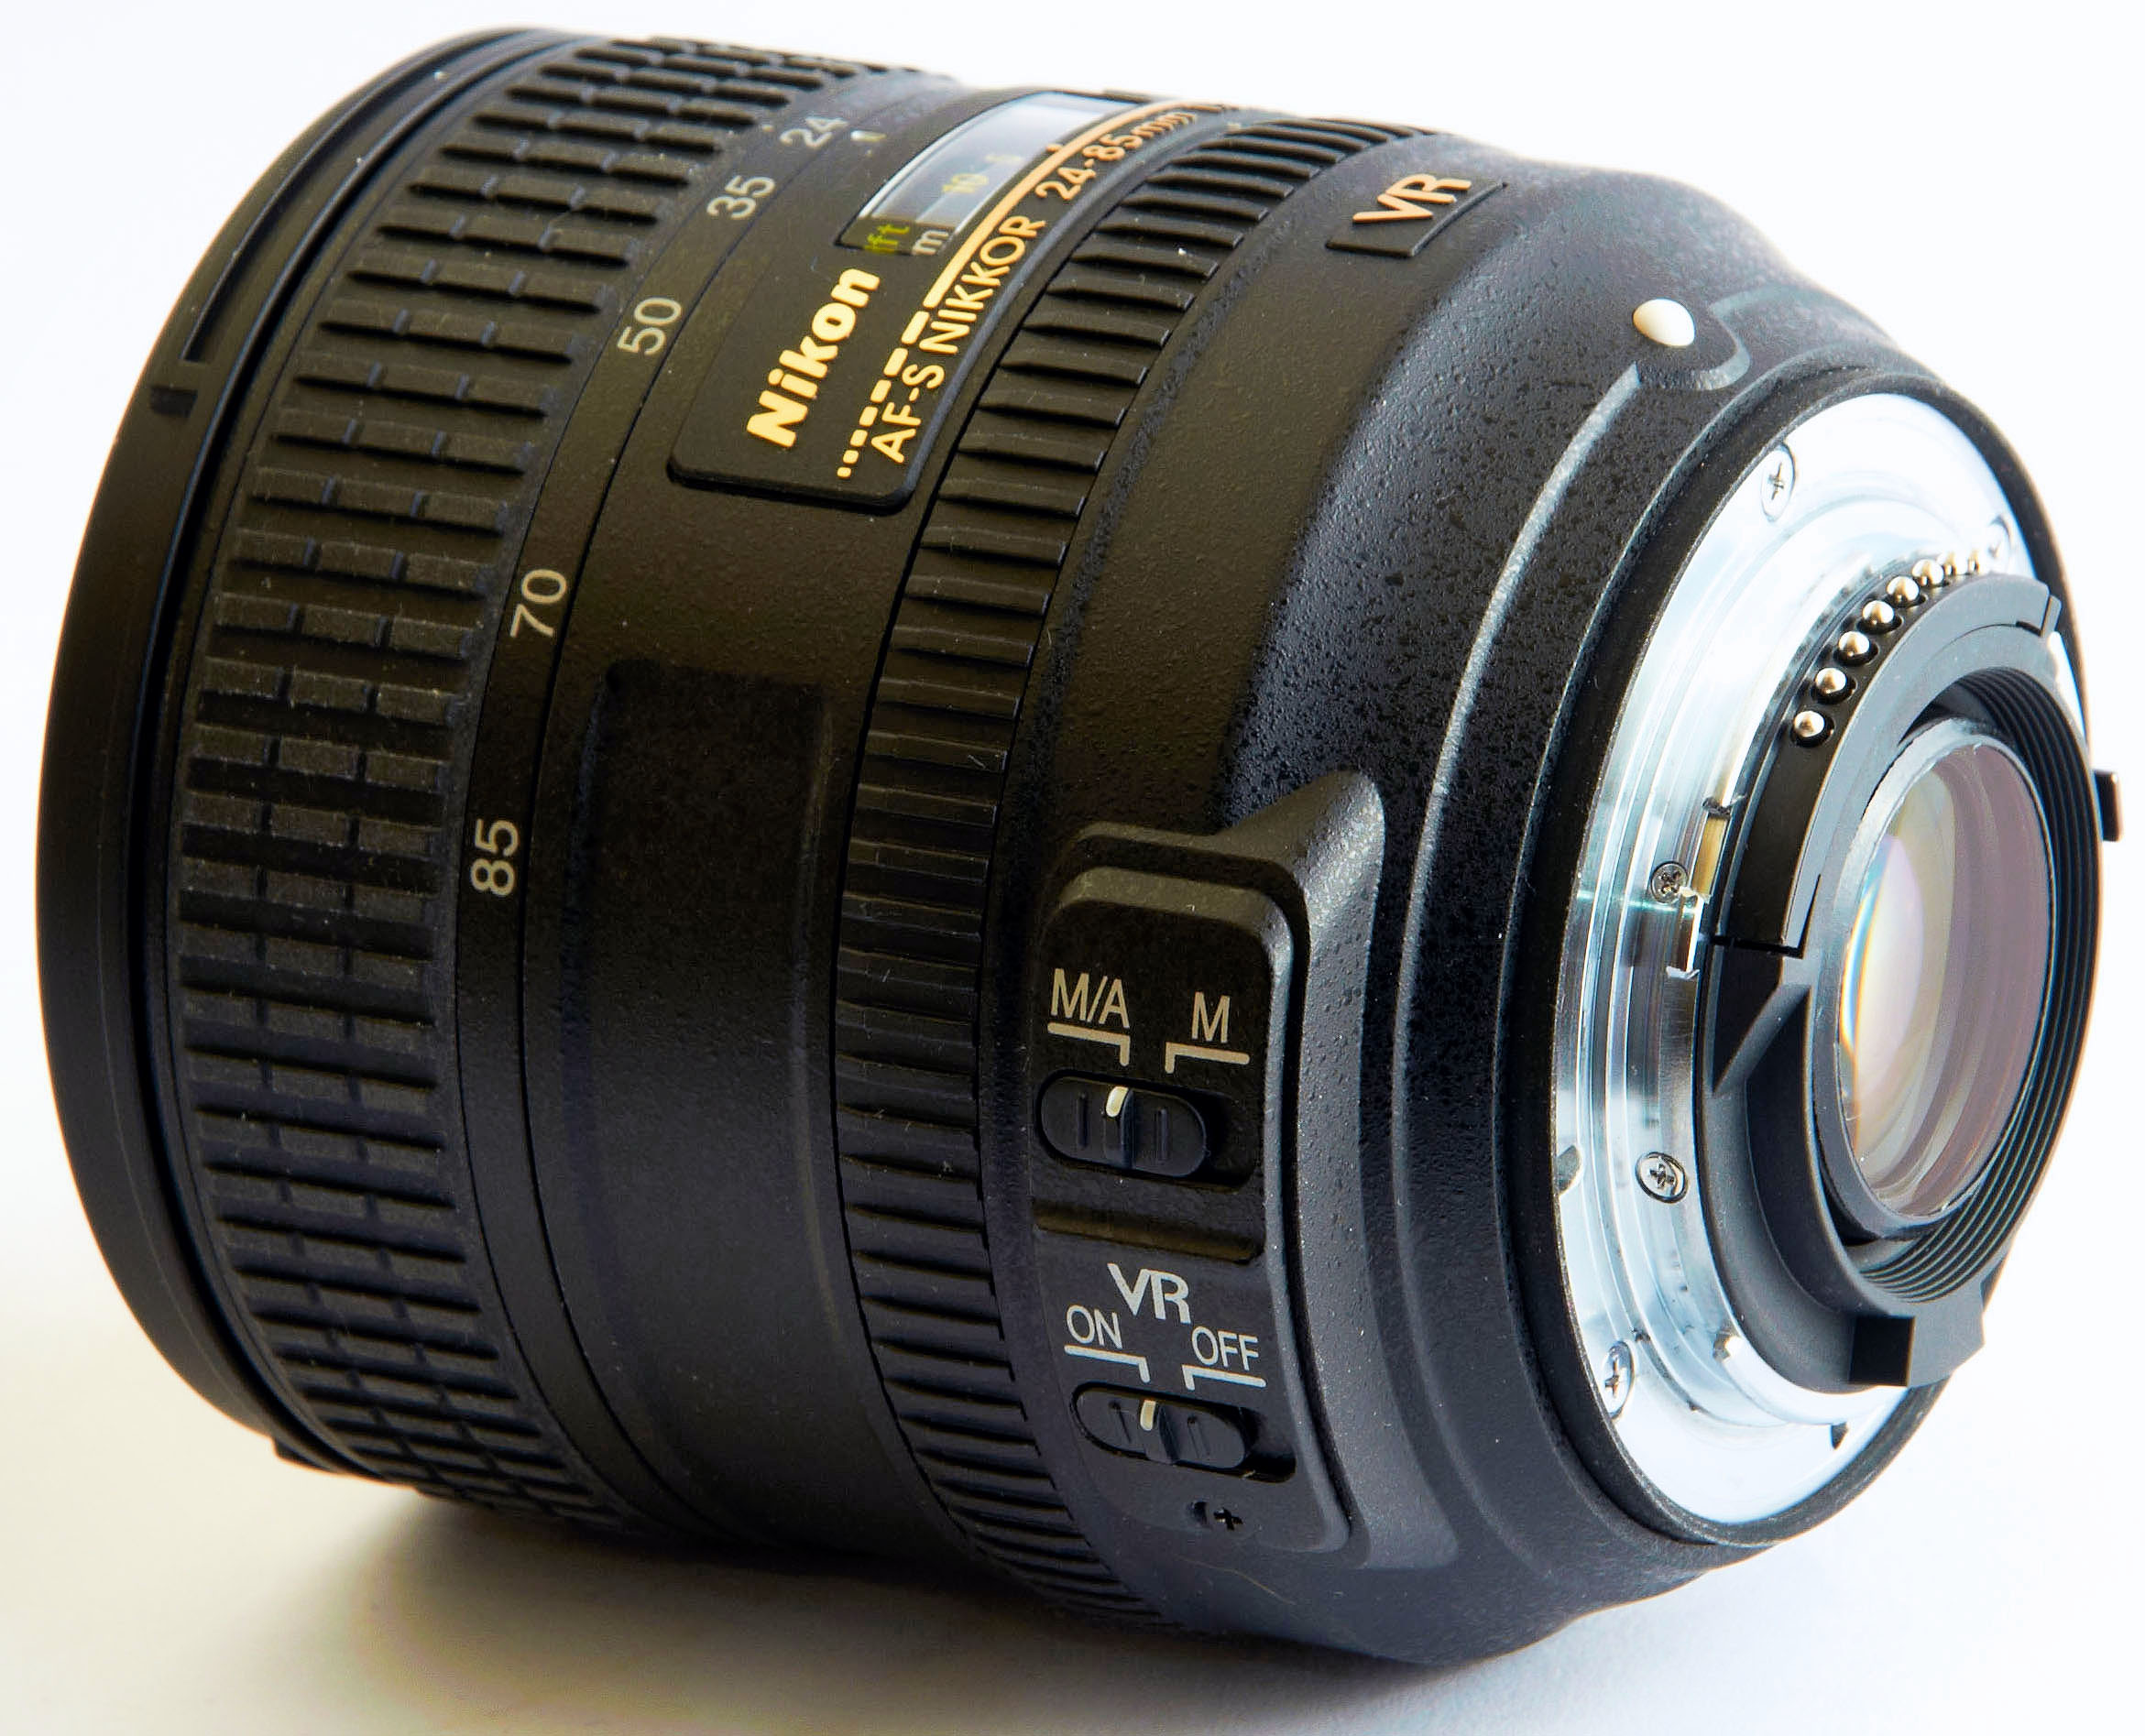 Nikon AF-S Nikkor 24-85mm f/3.5-4.5G ED VR Lens Review